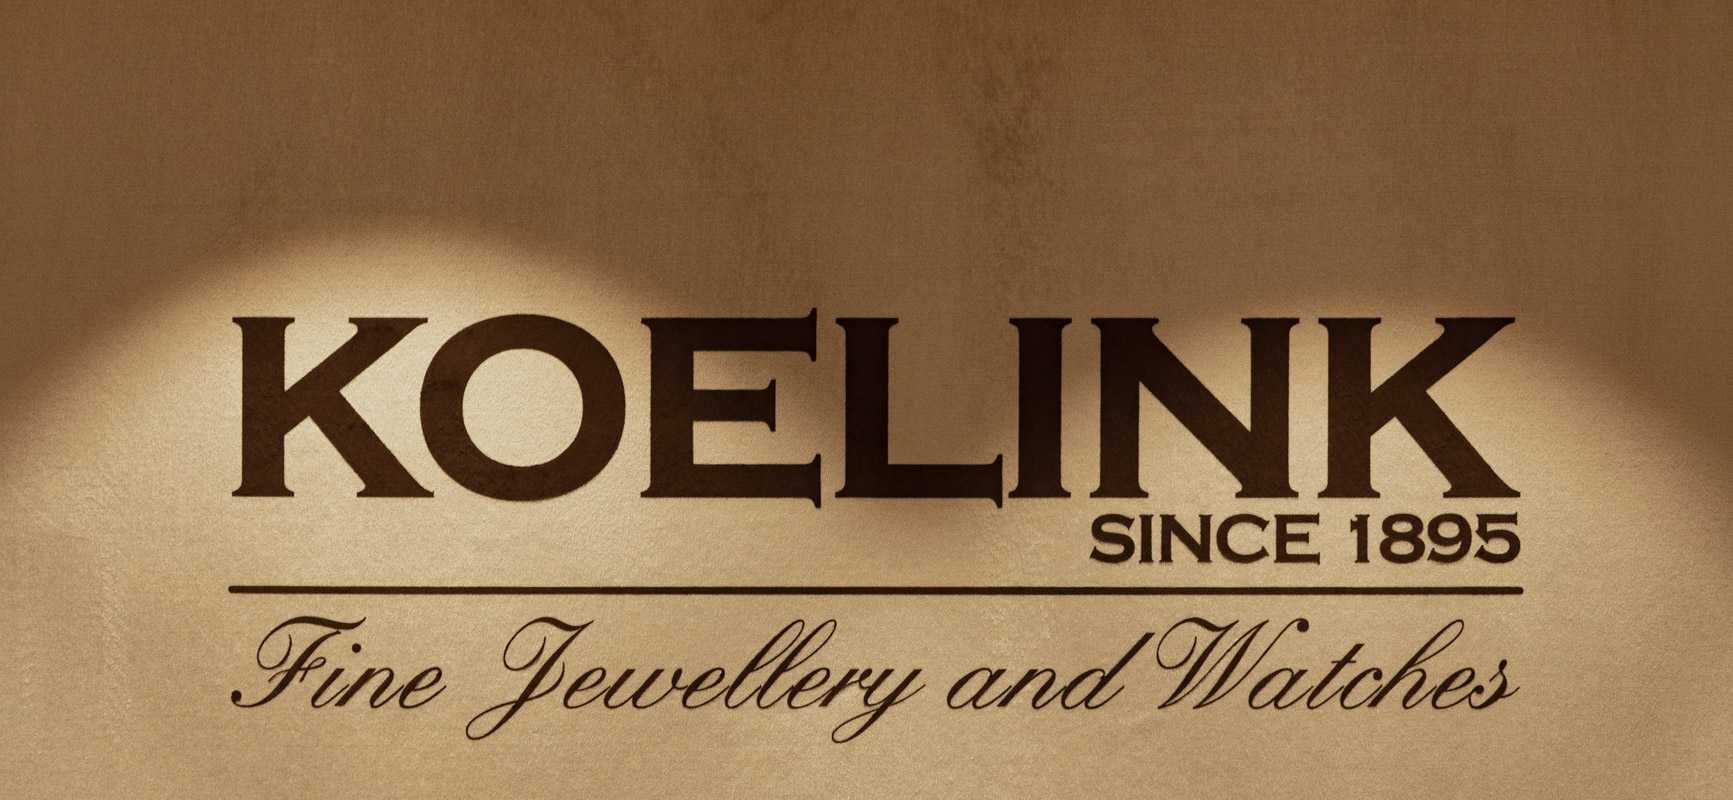 Koelink Juweliers | Enschede - Juweliers